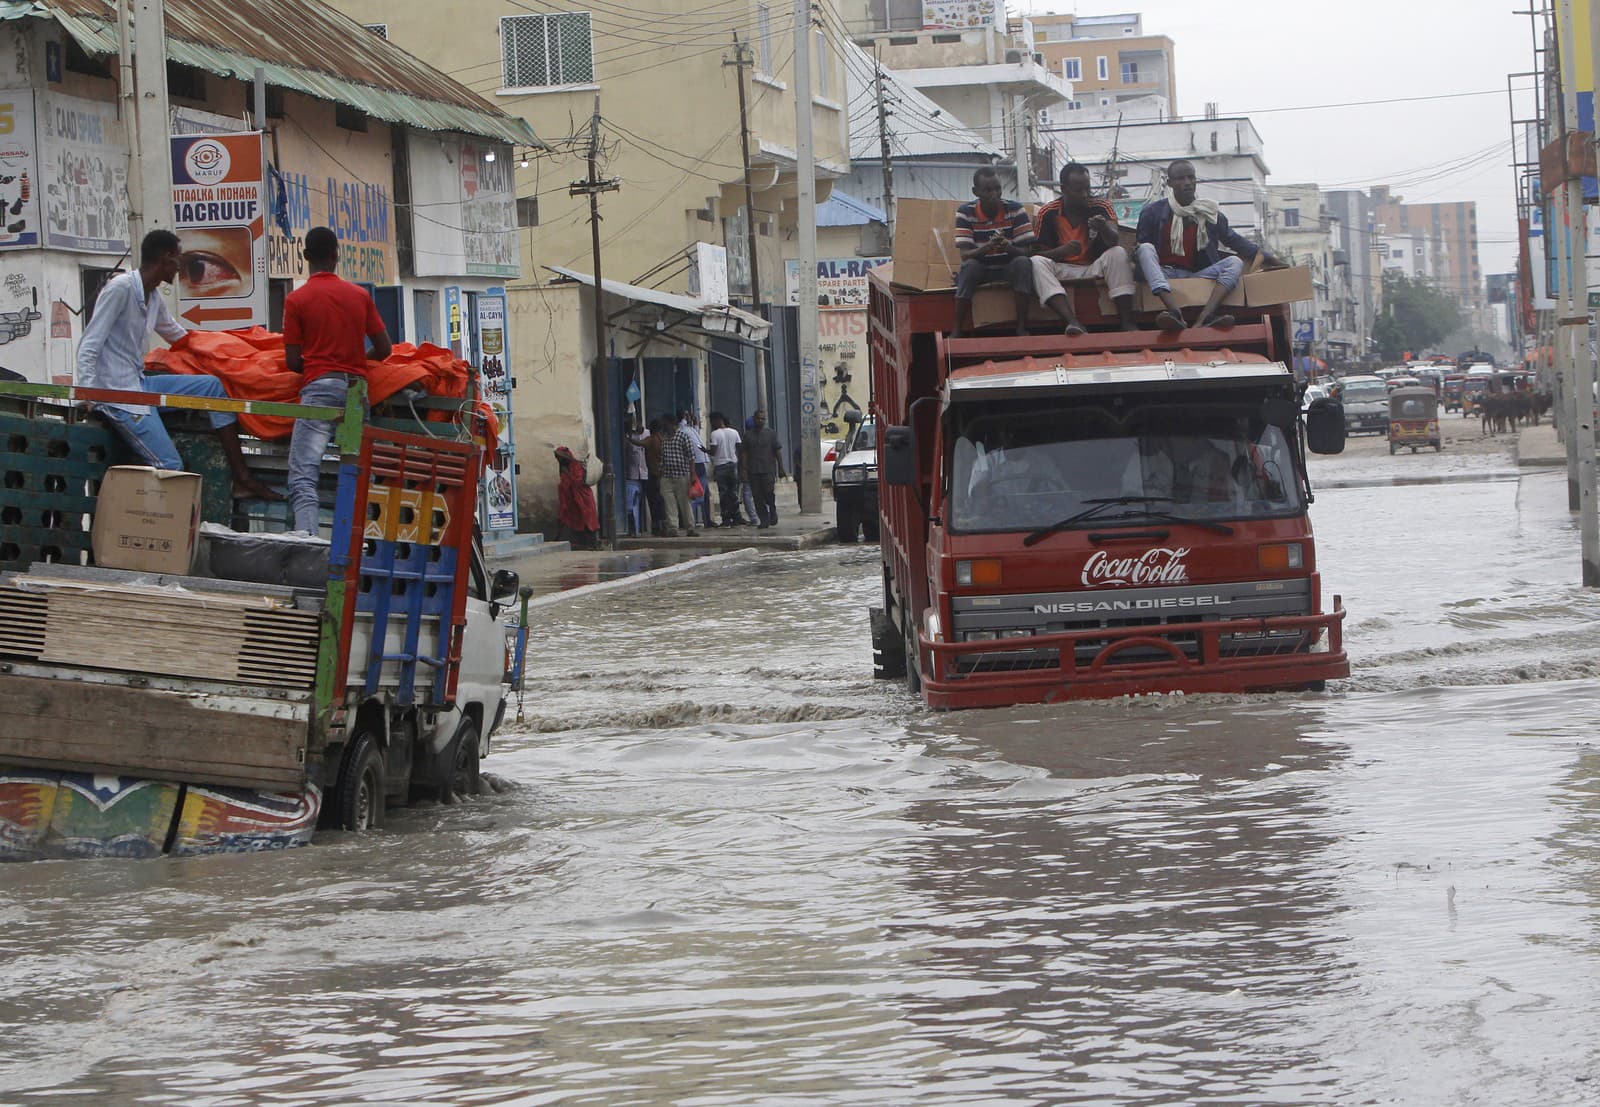 Povodne v Somálsku zabili